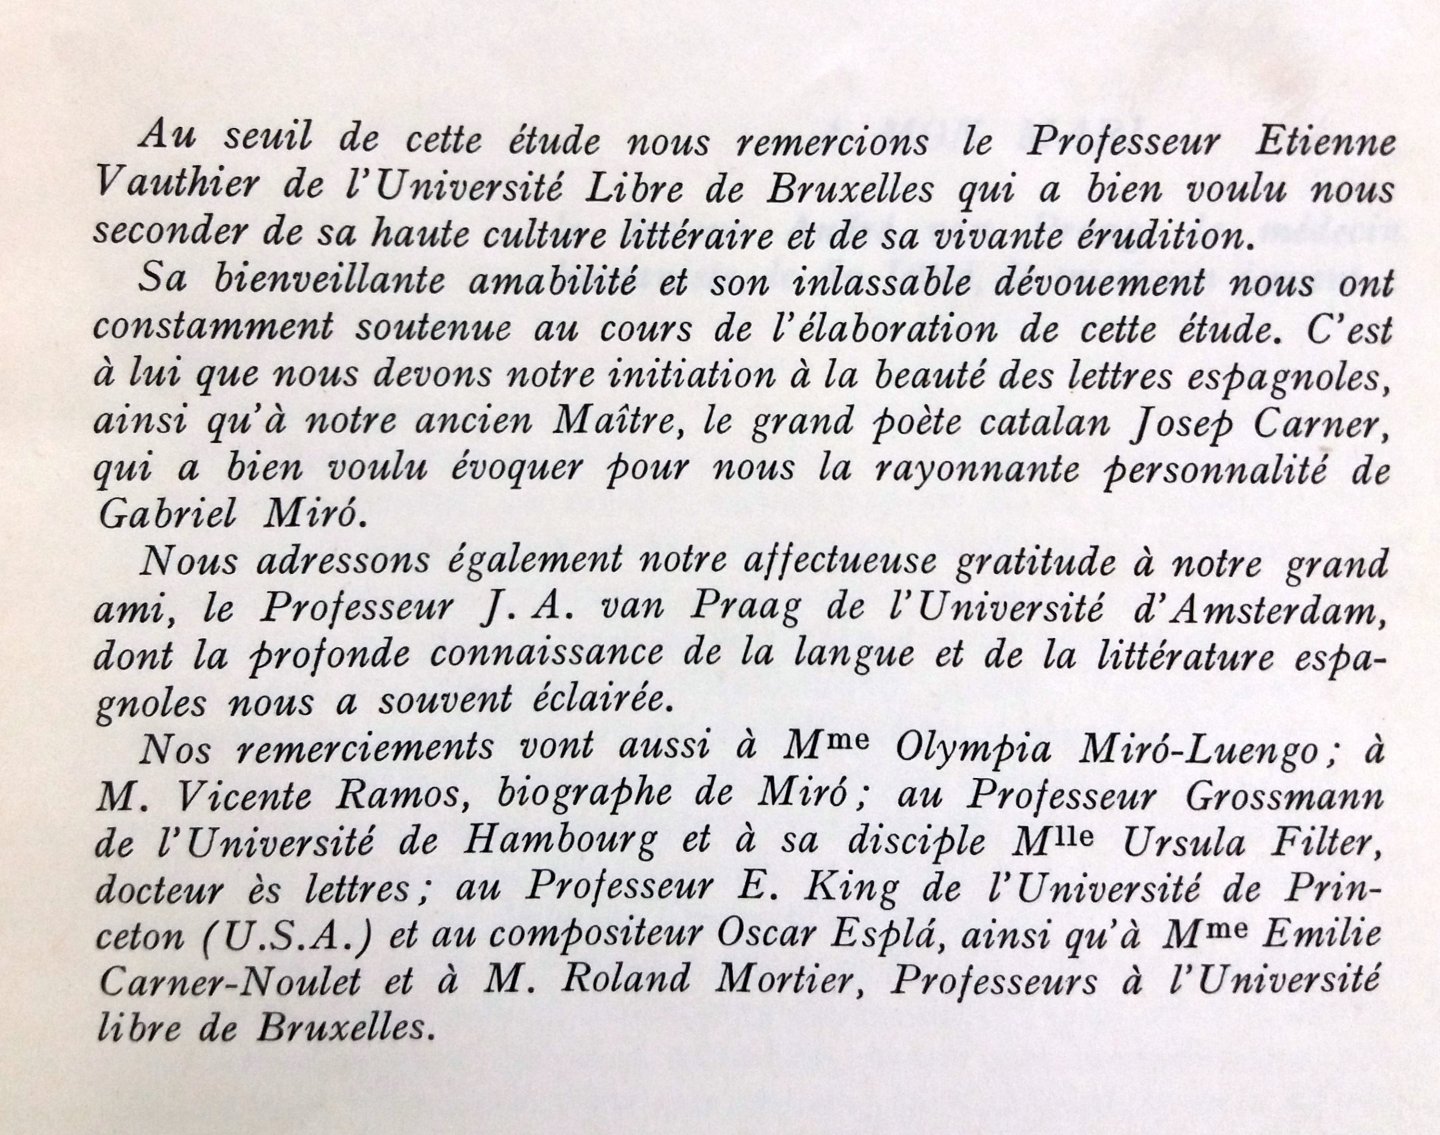 Praag-Chantraine, Jacqueline van - Gabriel Miró ou le visage du Levant, terre d'Espagne (FRANSTALIG)